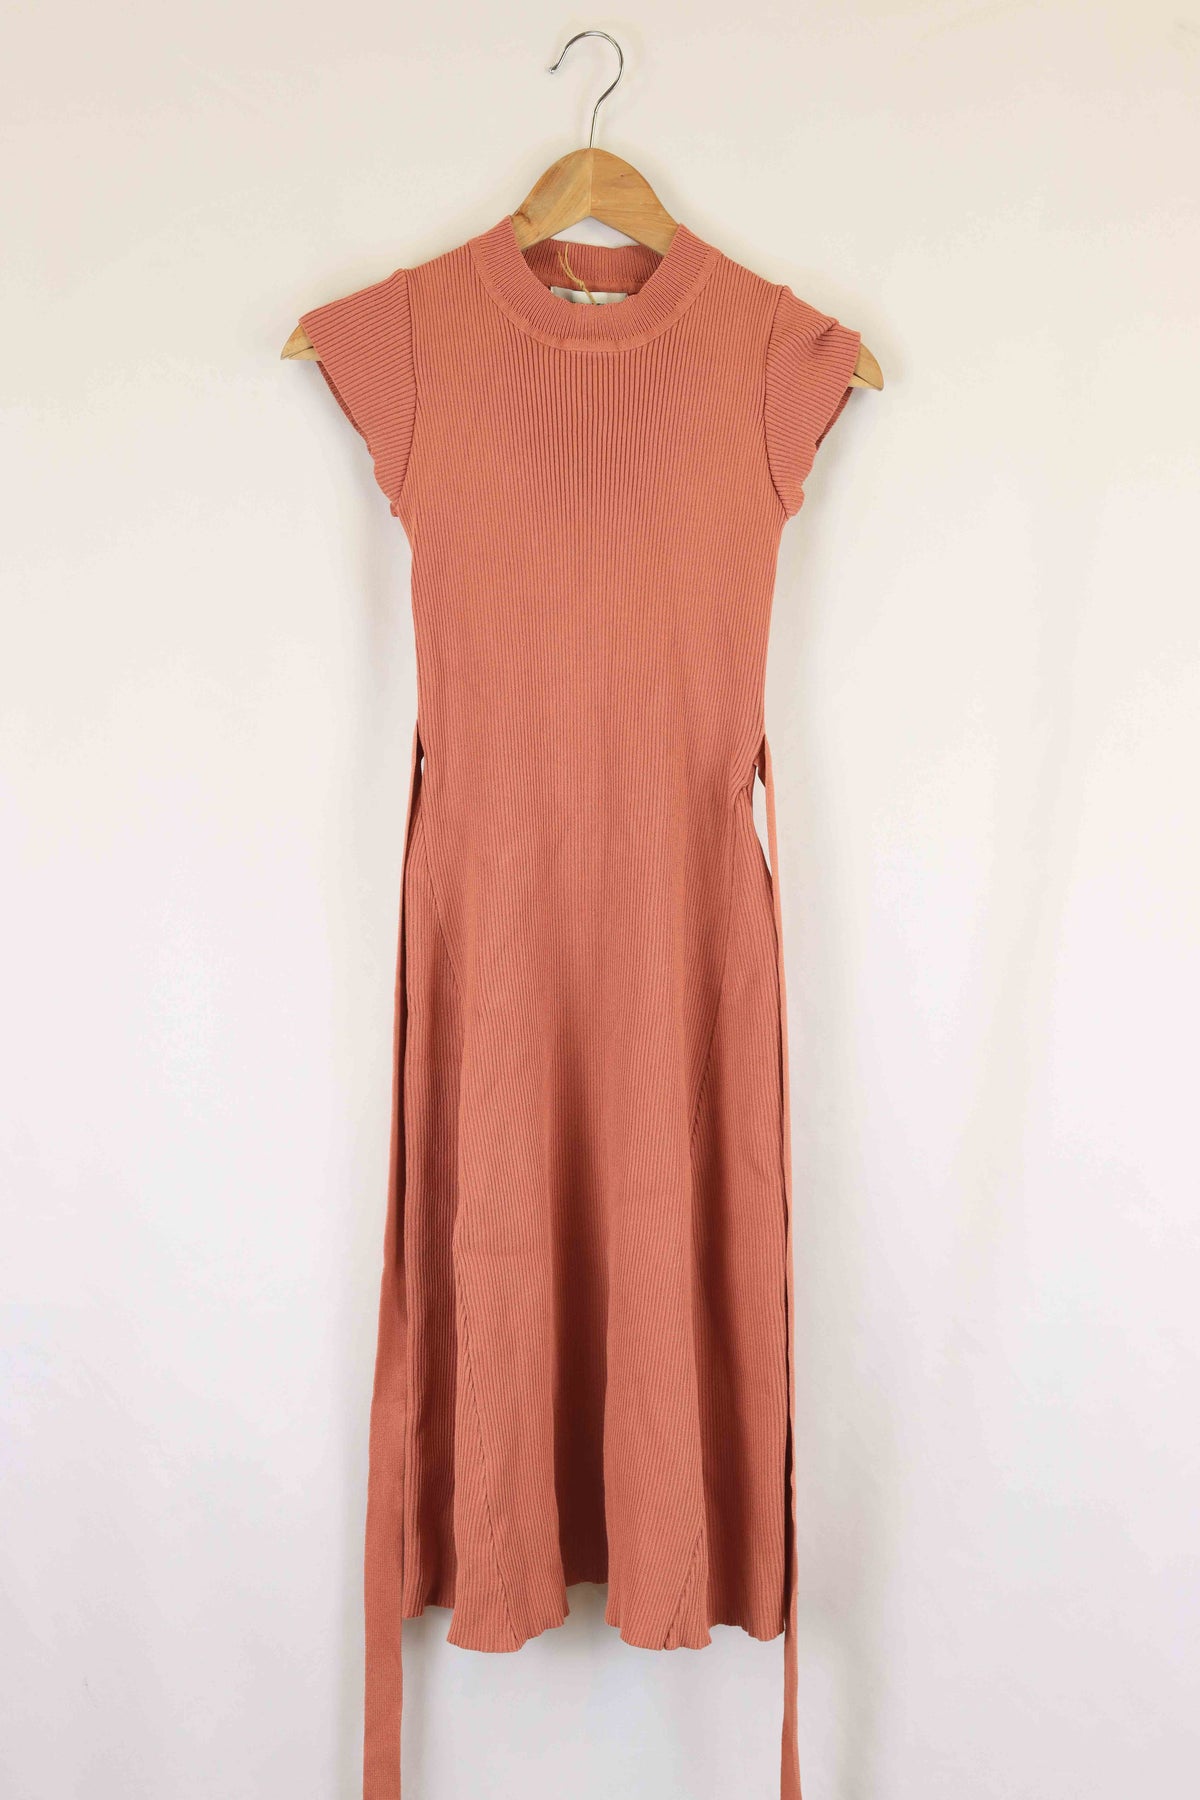 Whyte Valentyne Peach Dress 8